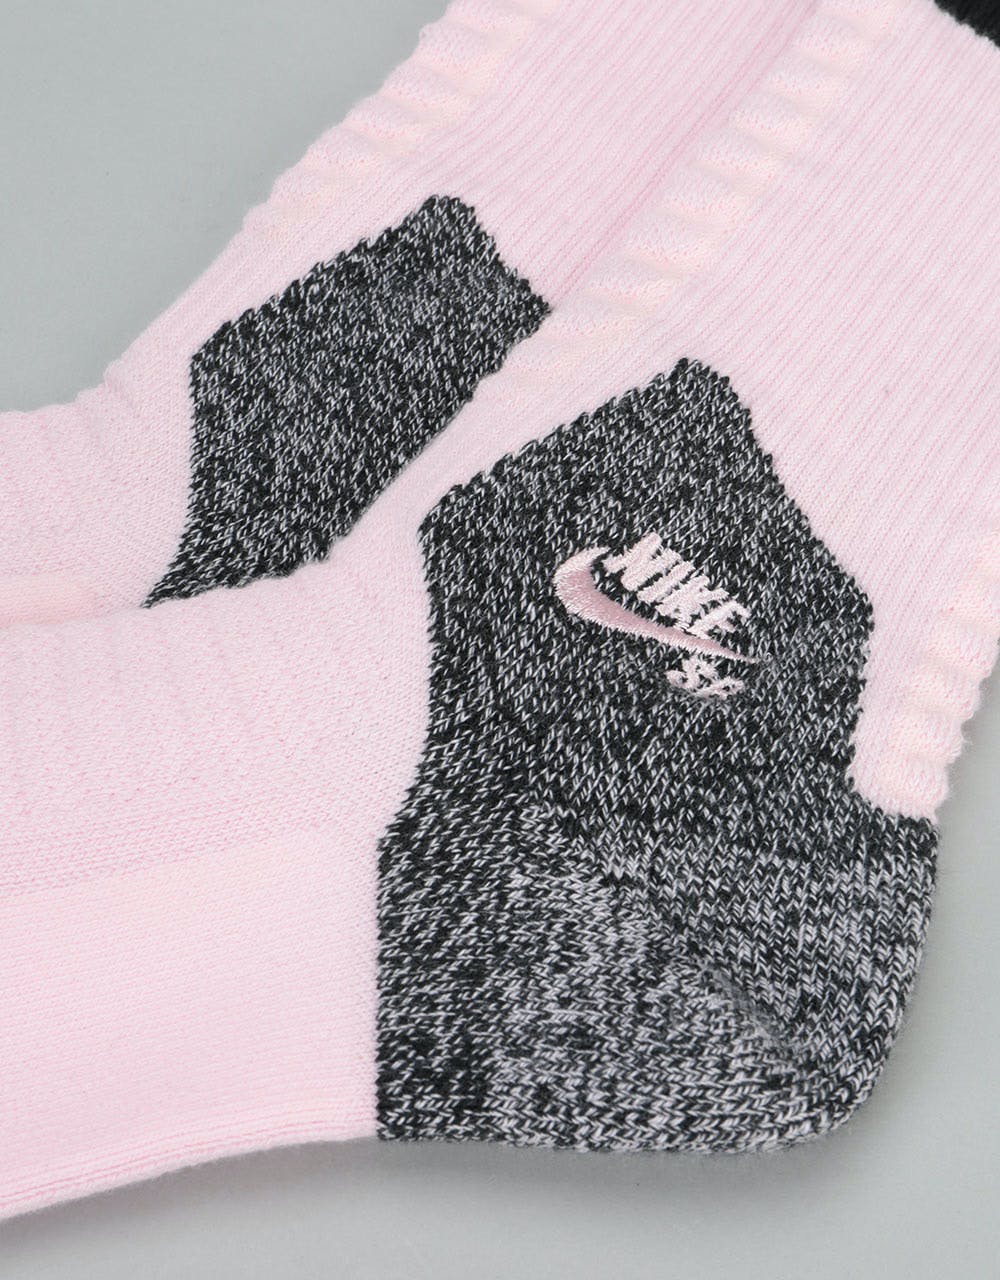 Nike SB Elite Skate 2.0 Crew Socks - Prism Pink/Black/Black